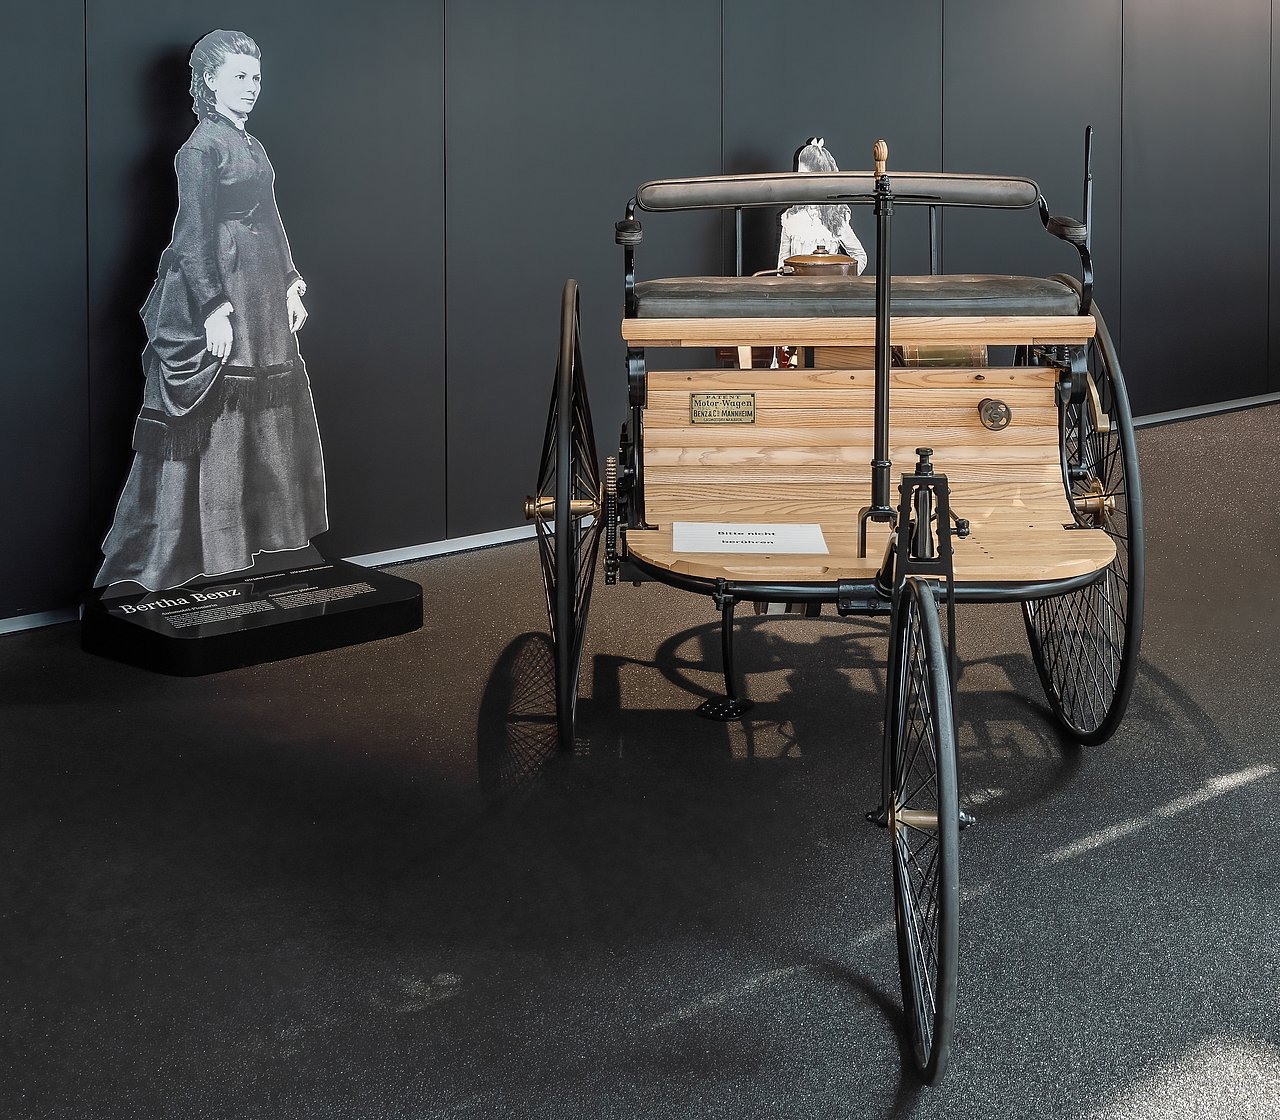 Benz Patentmotorwagen, im Hintergrund Fotografie von Bertha Benz. Bildrechte: shutterstock